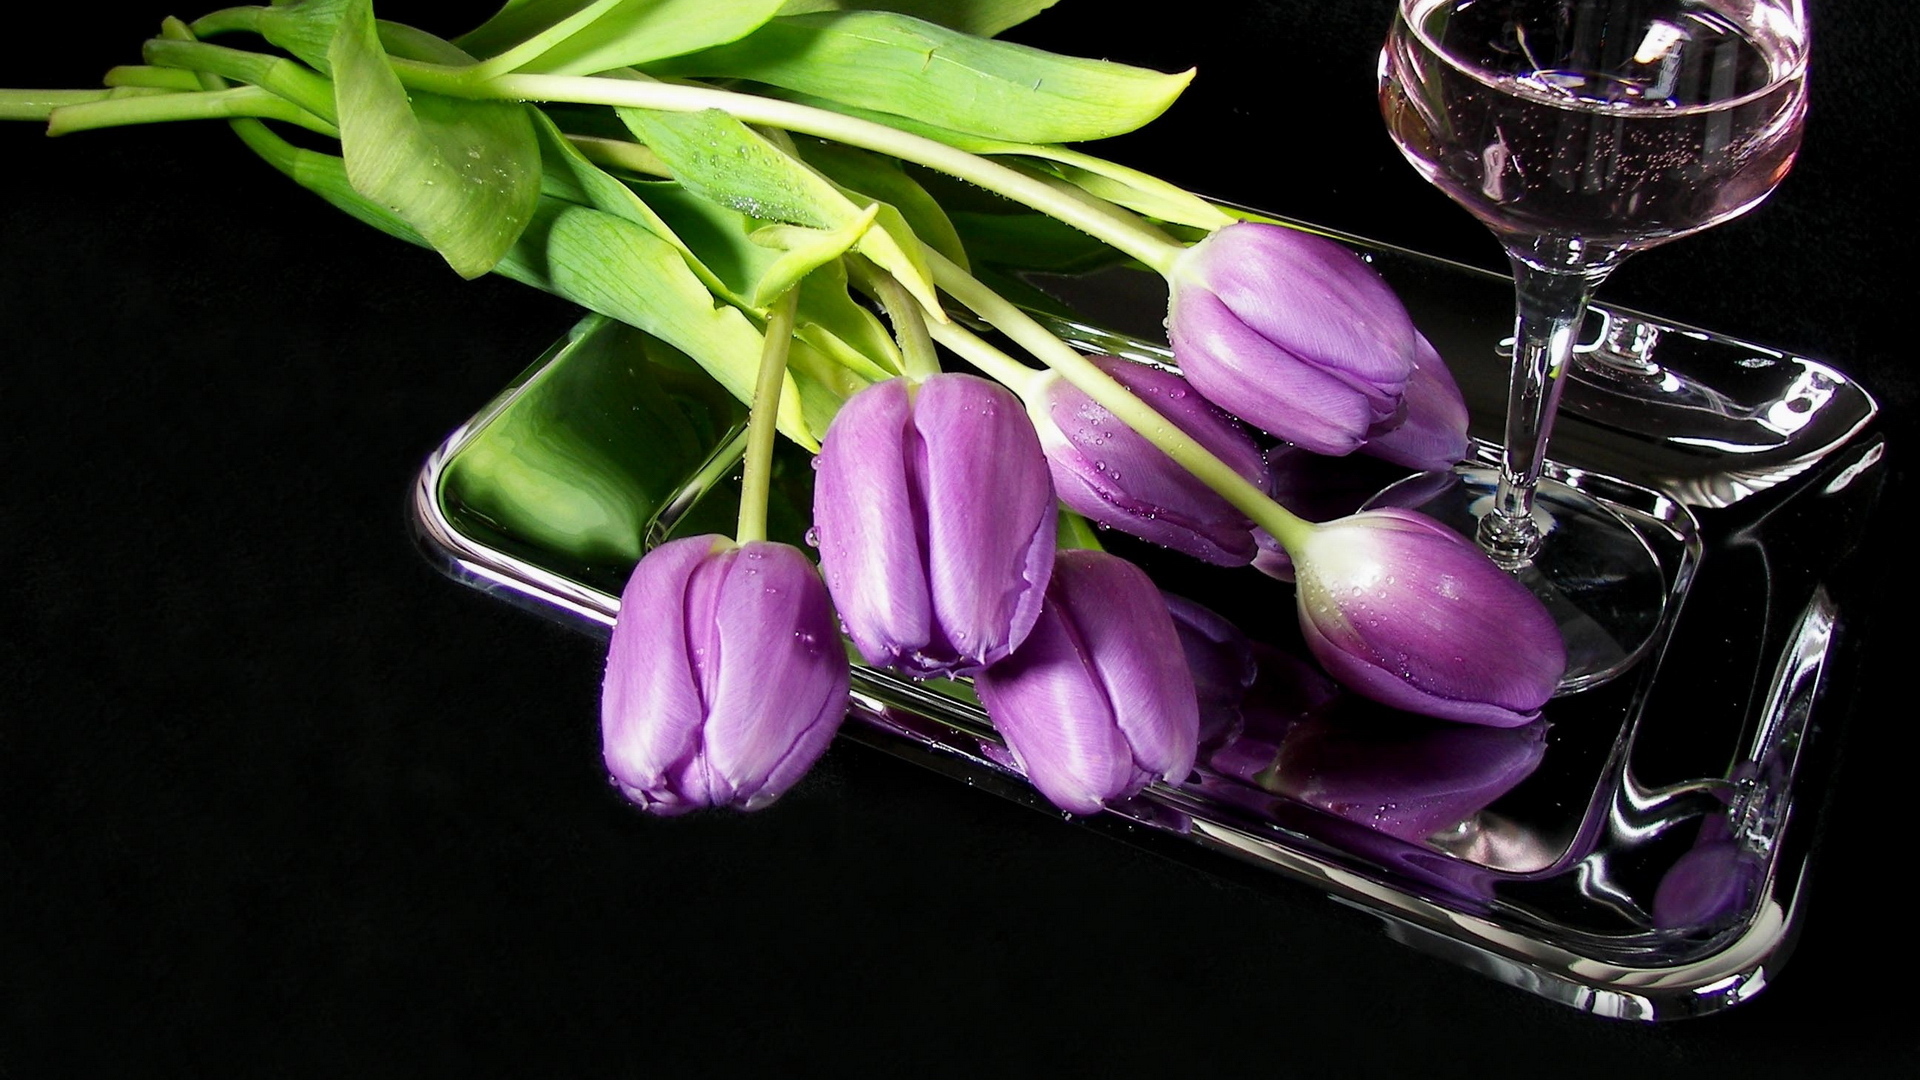 Бесплатное фото Сиреневые тюльпаны